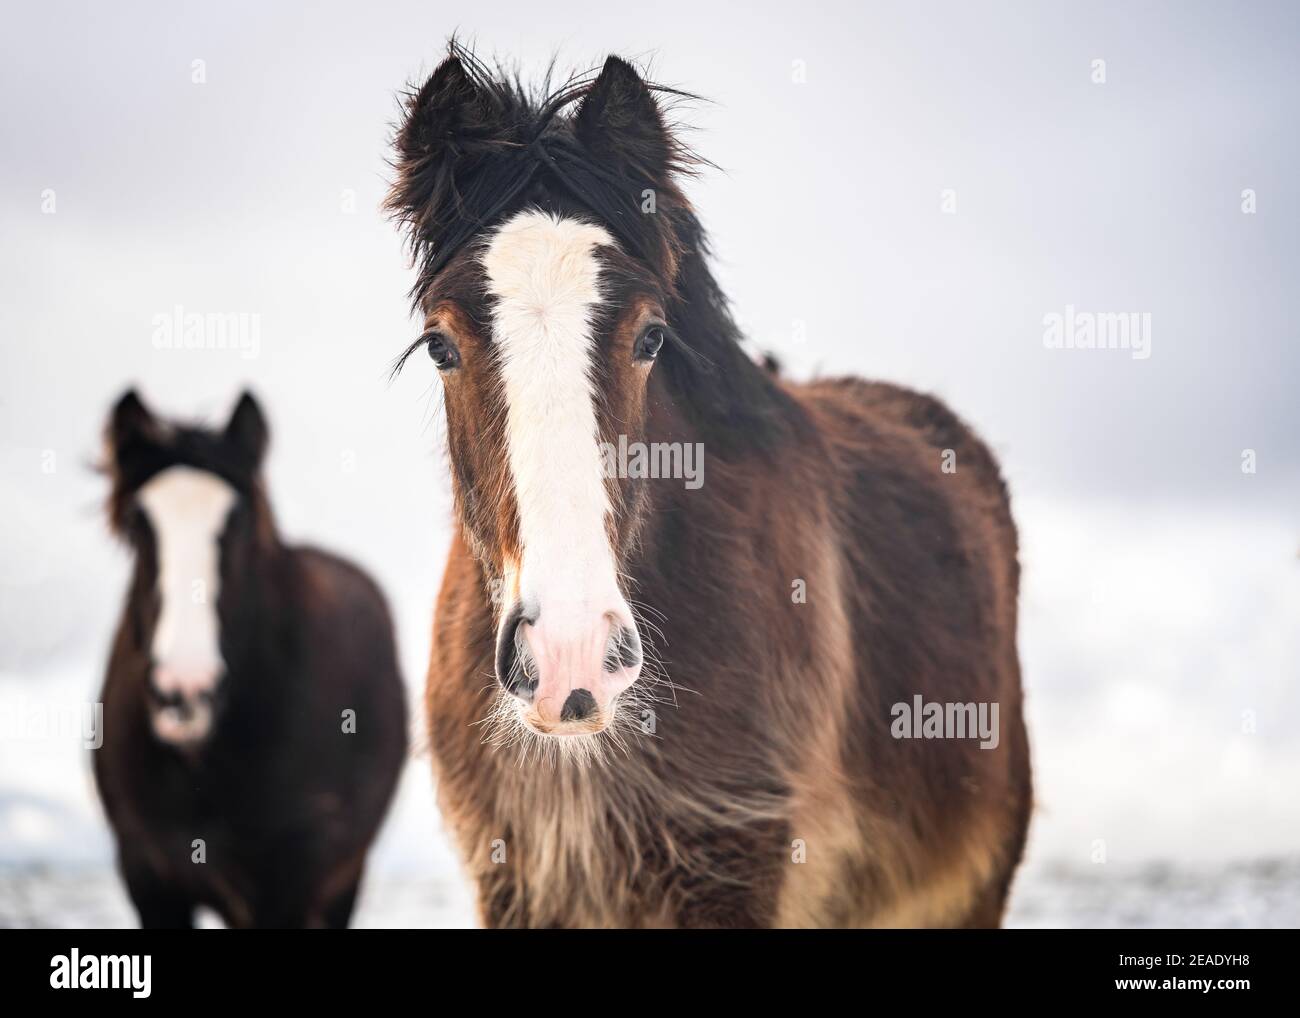 Schöne große irische Zigeunercob Pferde junge Fohlen Roaming wild Bei starkem Schnee am Boden, der durch Kälte in Richtung Kamera läuft Tief verschneite Winterfeld Stockfoto